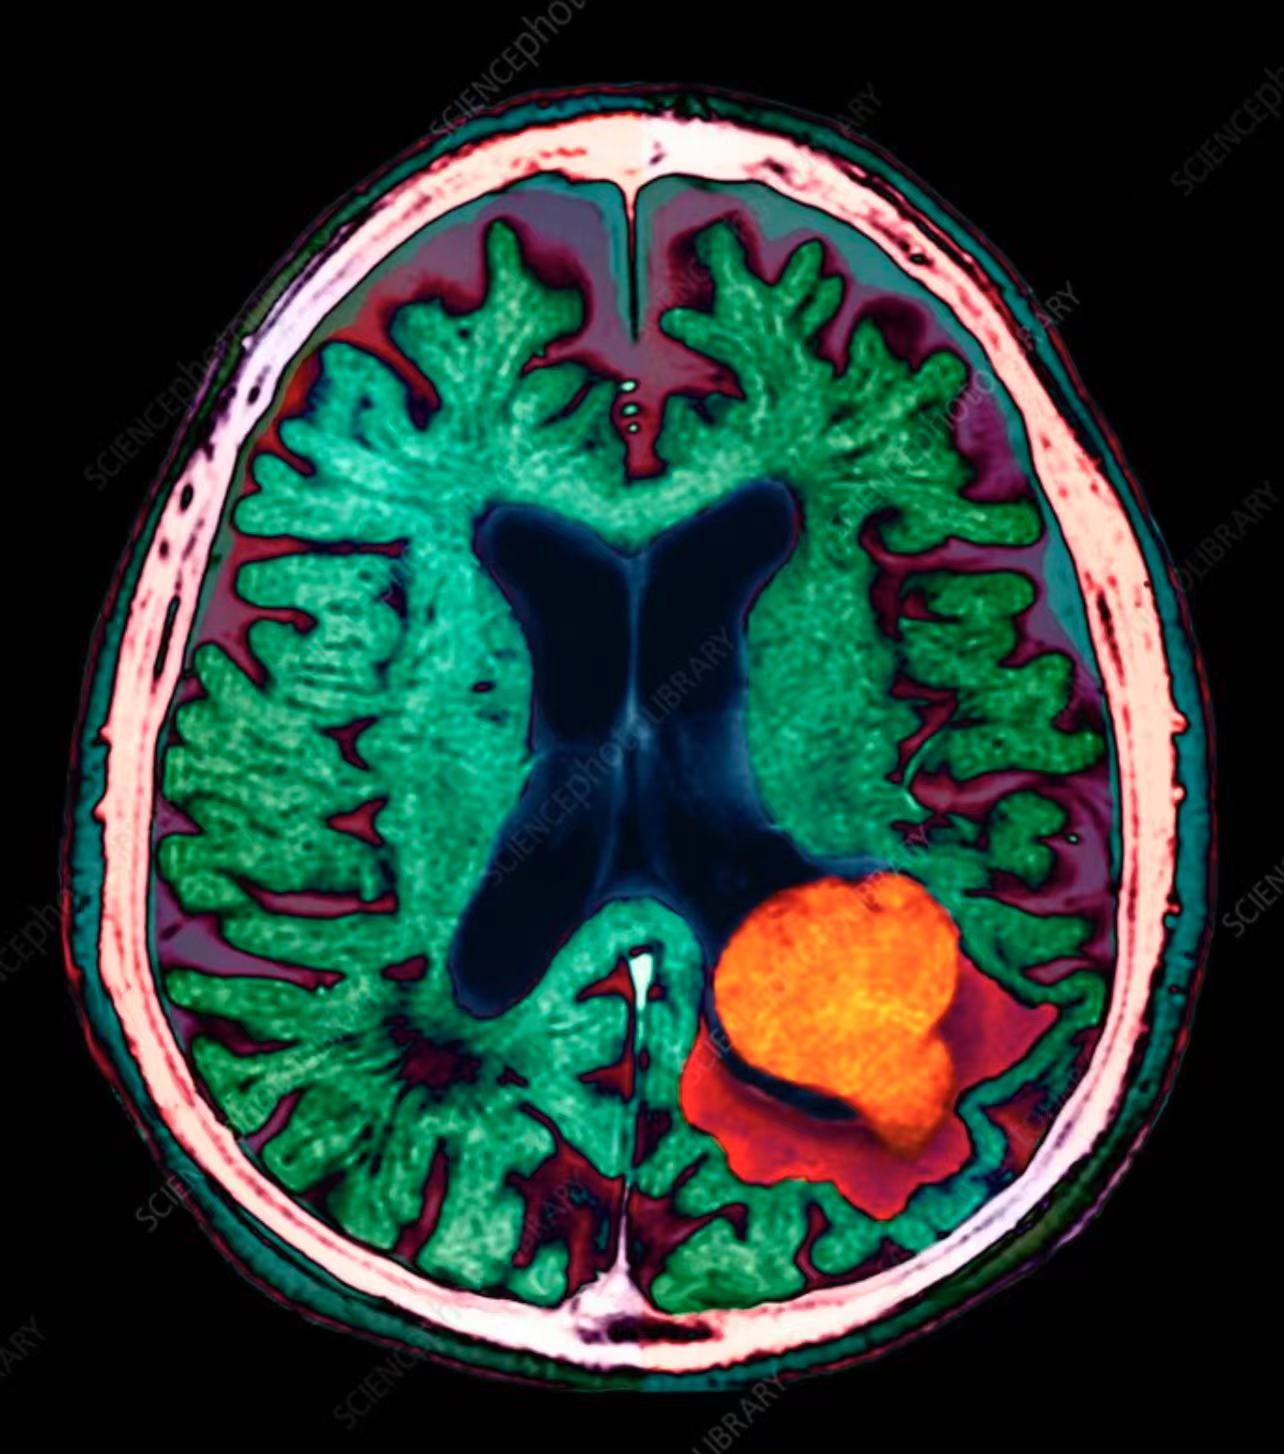 【补充剂方】-大脑病变、脑钙化、大脑黑斑、脑部疤痕组织、脑部白斑